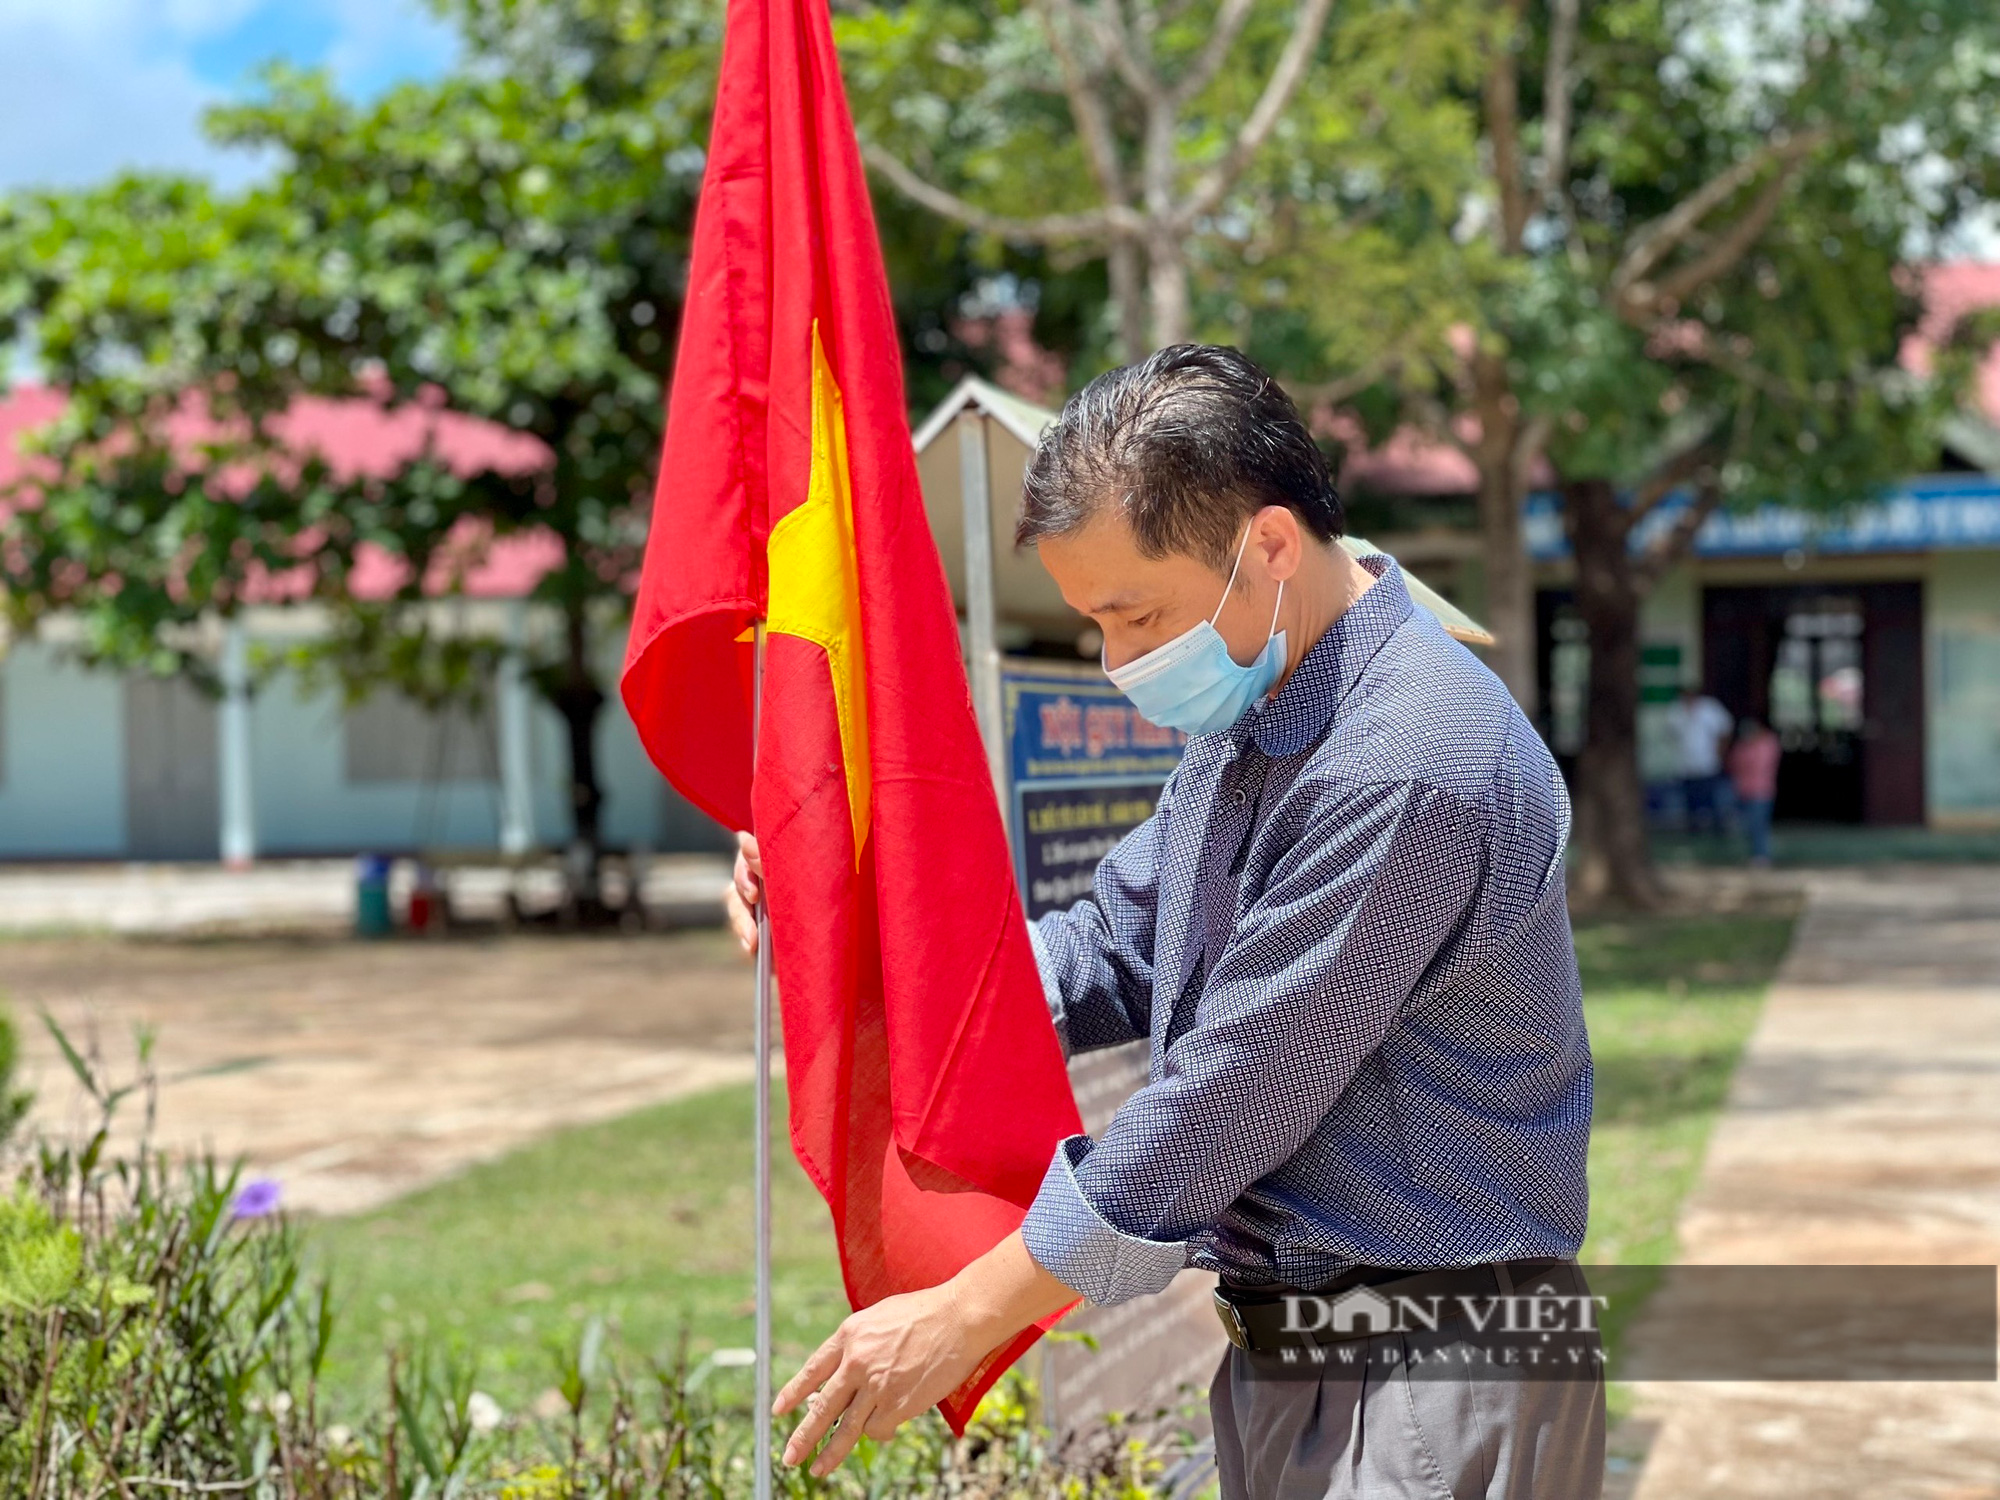 Đắk Lắk: Huyện vùng biên chuẩn bị cho Lễ khai giảng online đặc biệt - Ảnh 1.